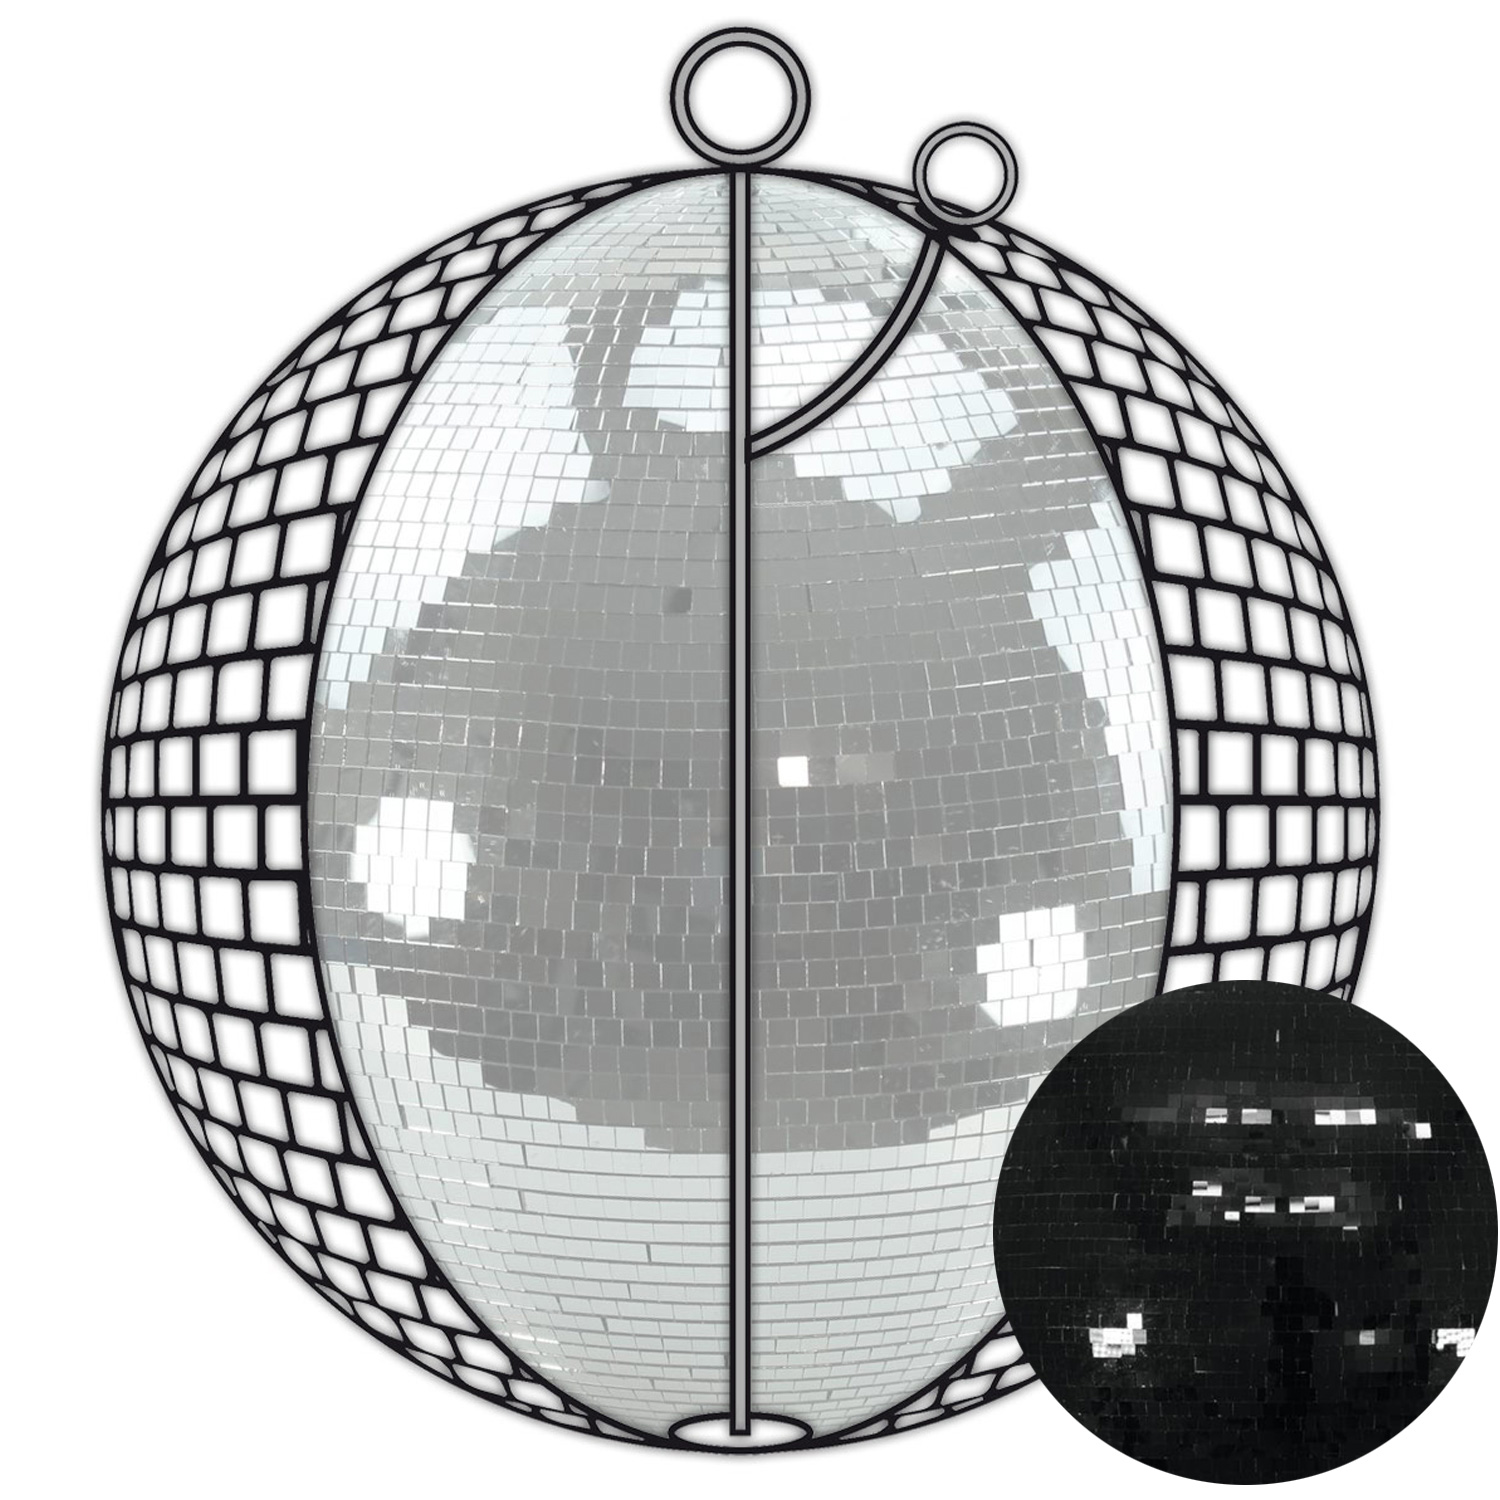 Spiegelkugel 200cm schwarz- Diskokugel (Discokugel) Party Lichteffekt - Echtglas - mirrorball safety black color